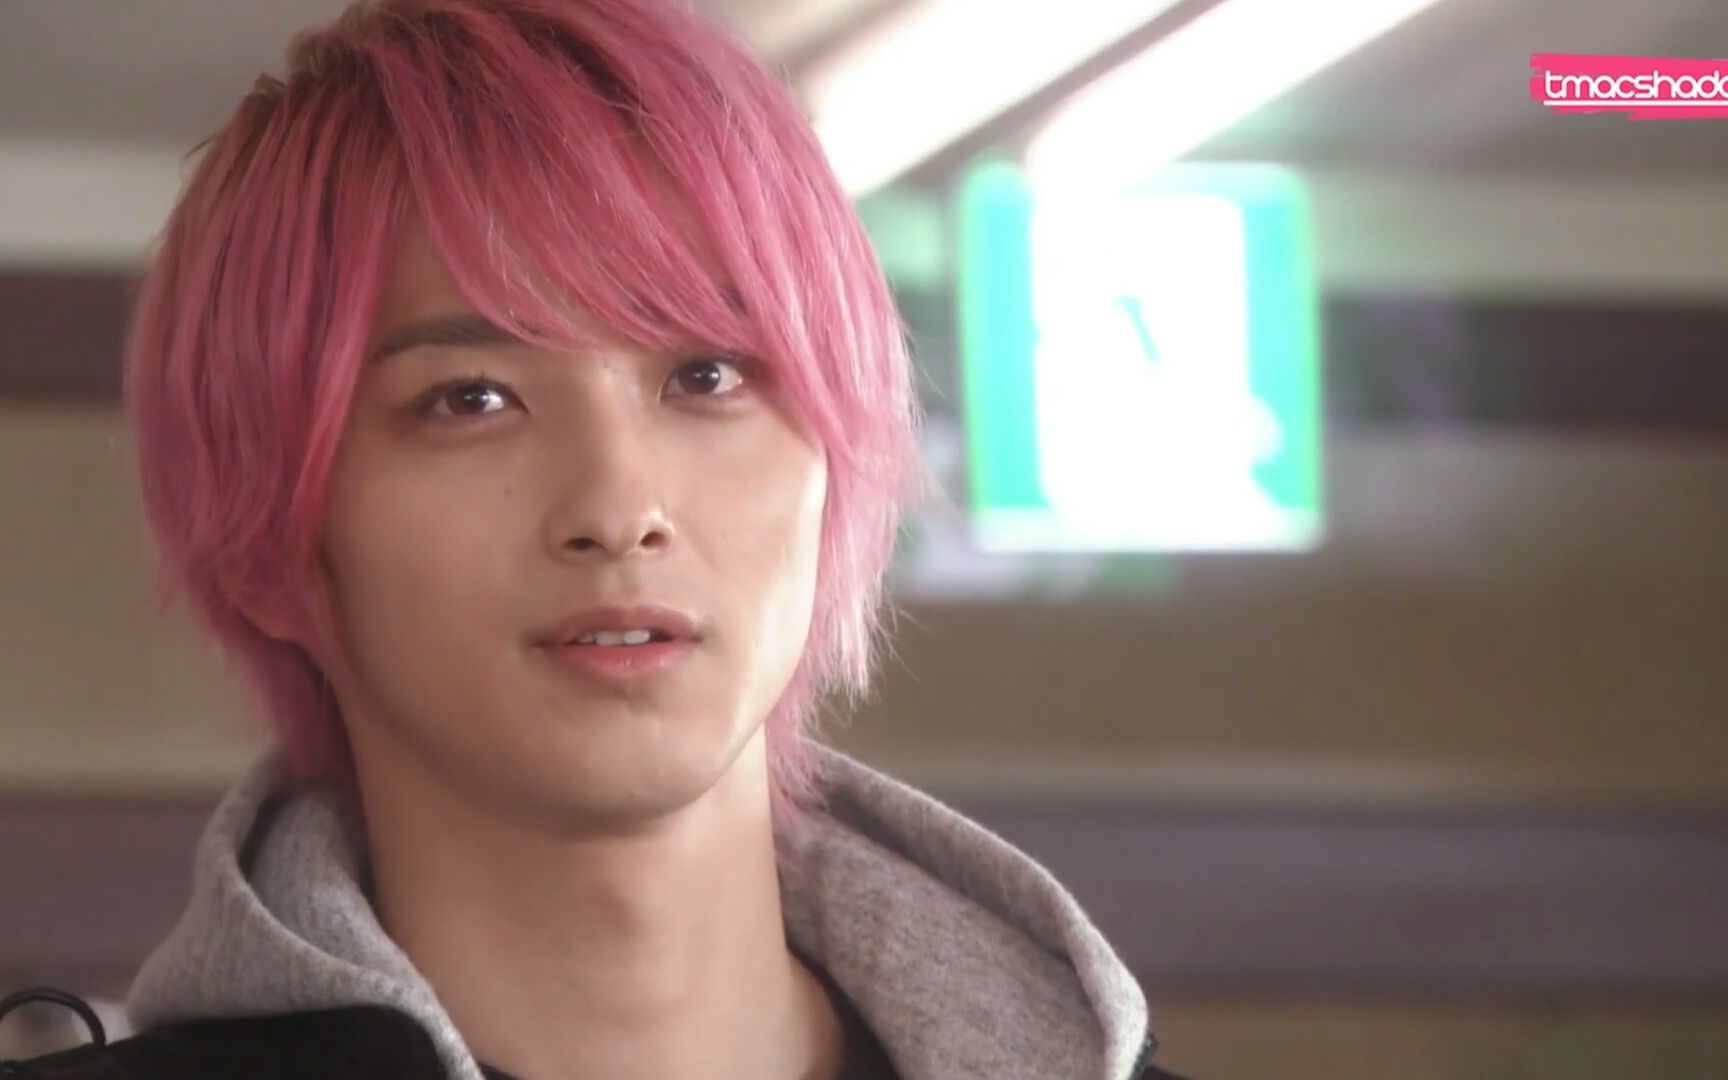 【横滨流星】【妈妈啊,我被一只粉毛甜到了】你见过粉色的流星吗?